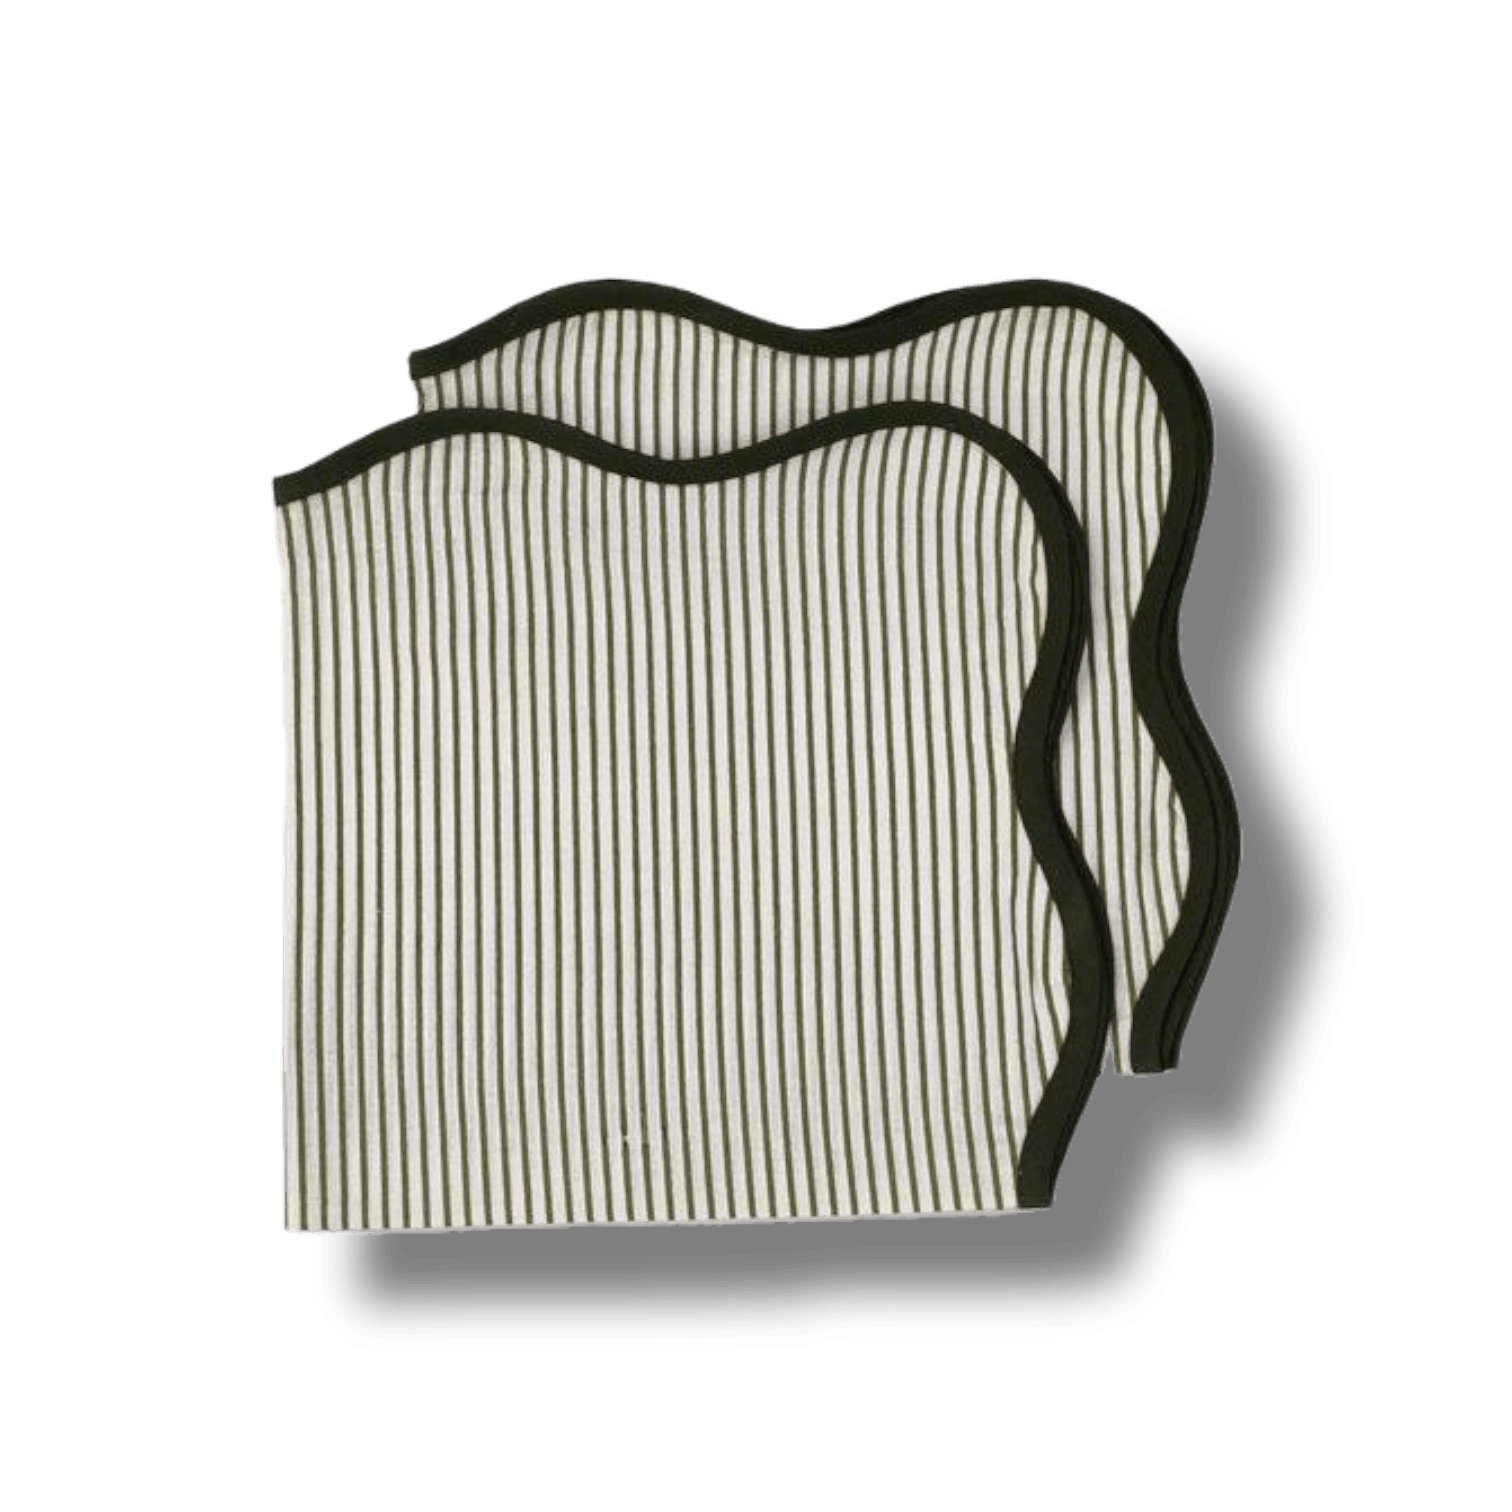 Scallop Striped Square Cotton Napkins - MAIA HOMES